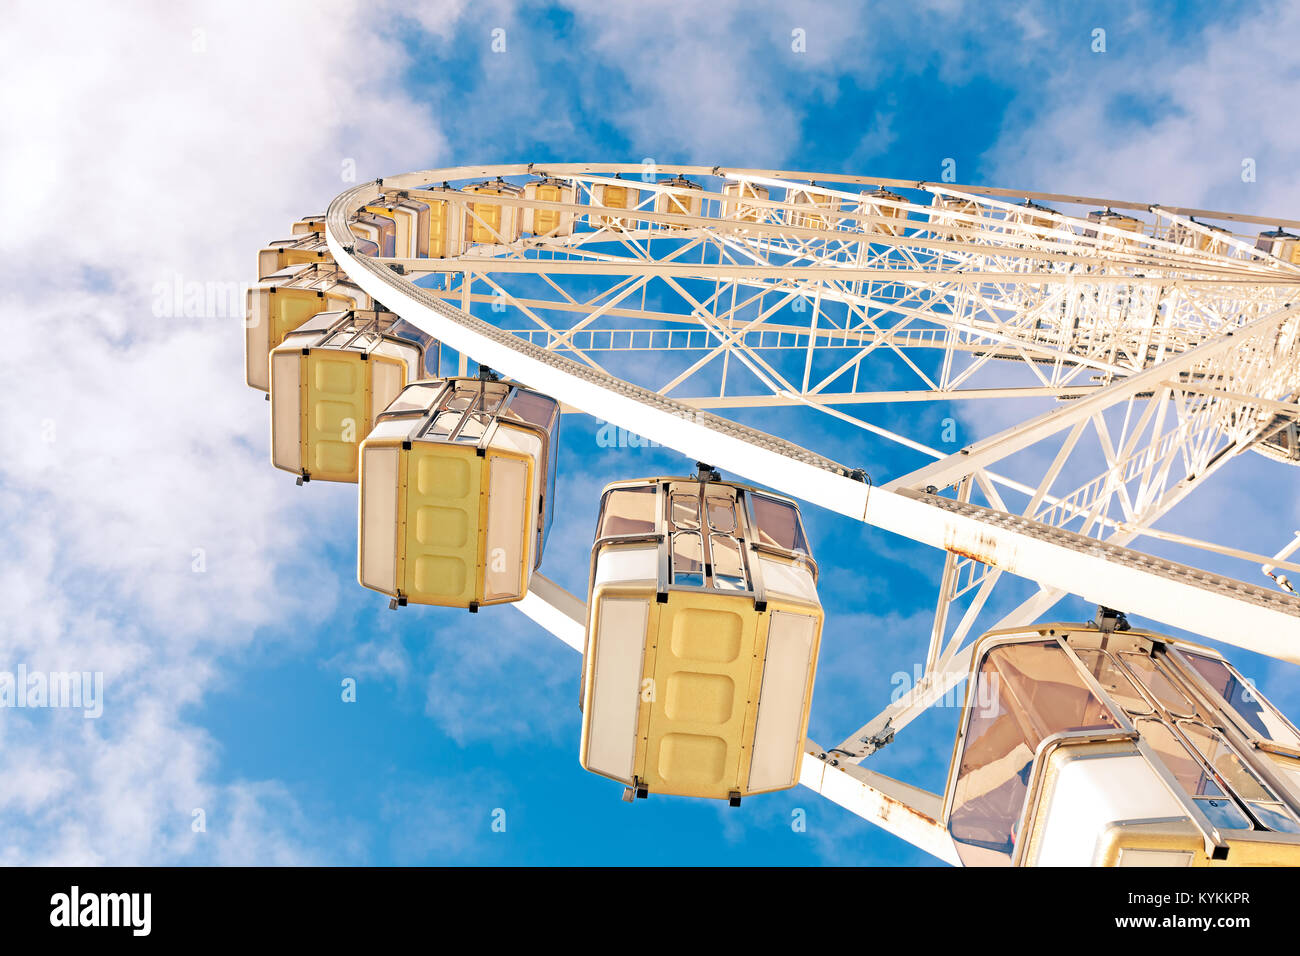 Mirando hacia arriba a una gran noria contra el cielo azul y las nubes blancas. Llama la Grand Roue, una tradición navideña en París, Francia Foto de stock